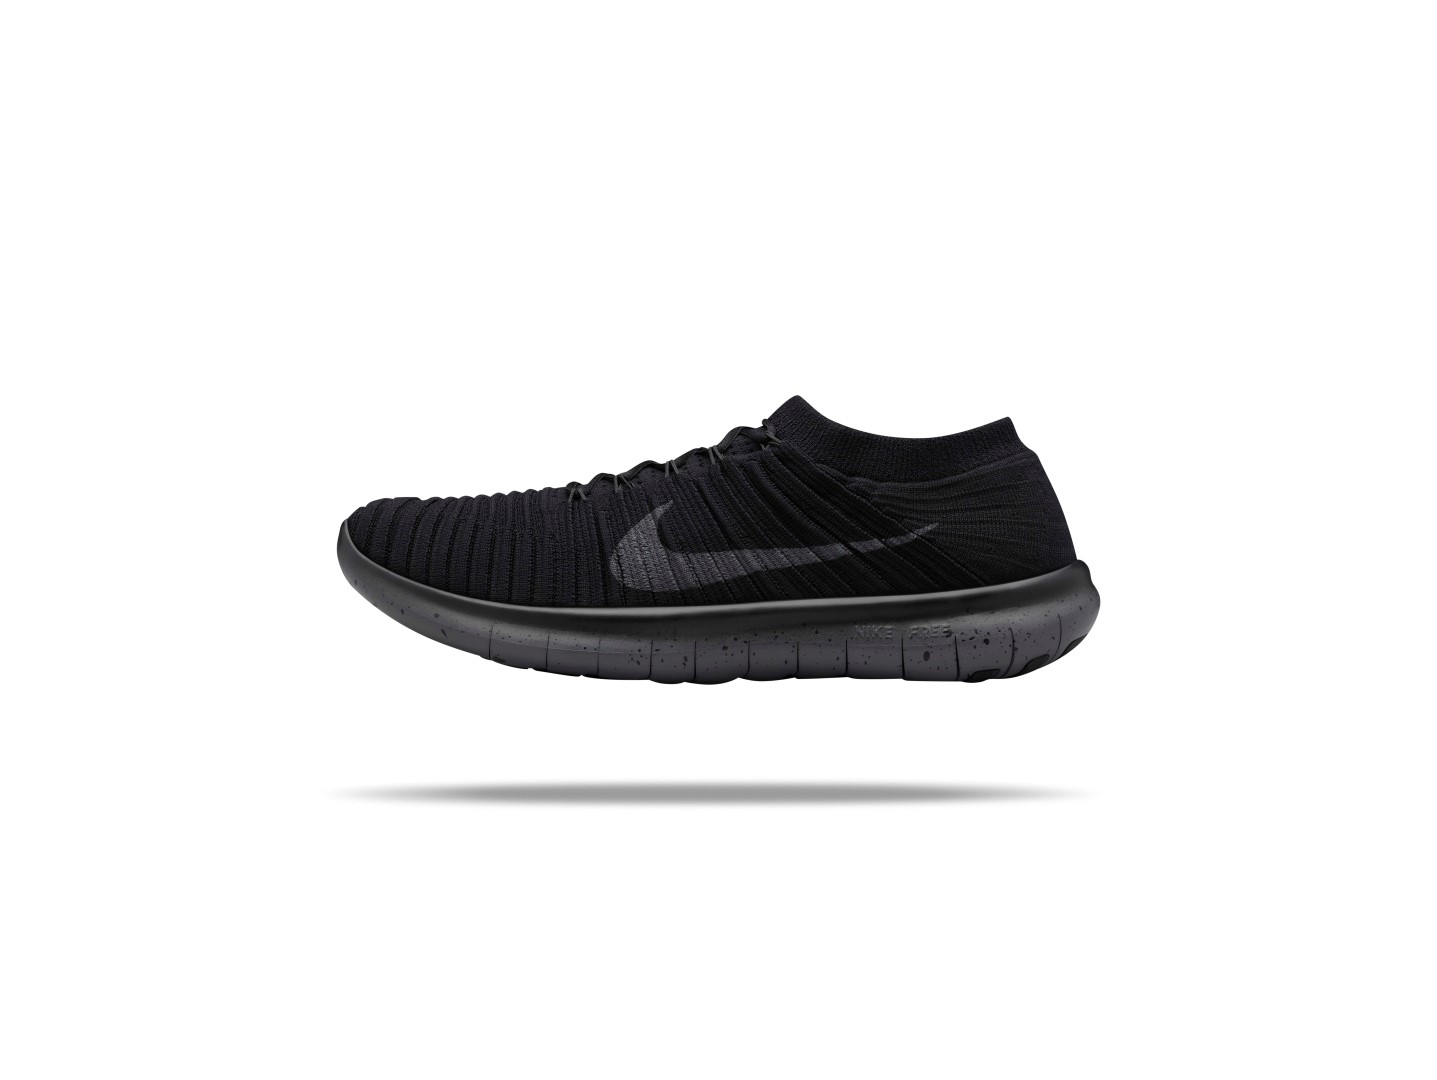 Nike sneakers 2016: la nuova NikeLab Free RN Motion Flyknit, le foto